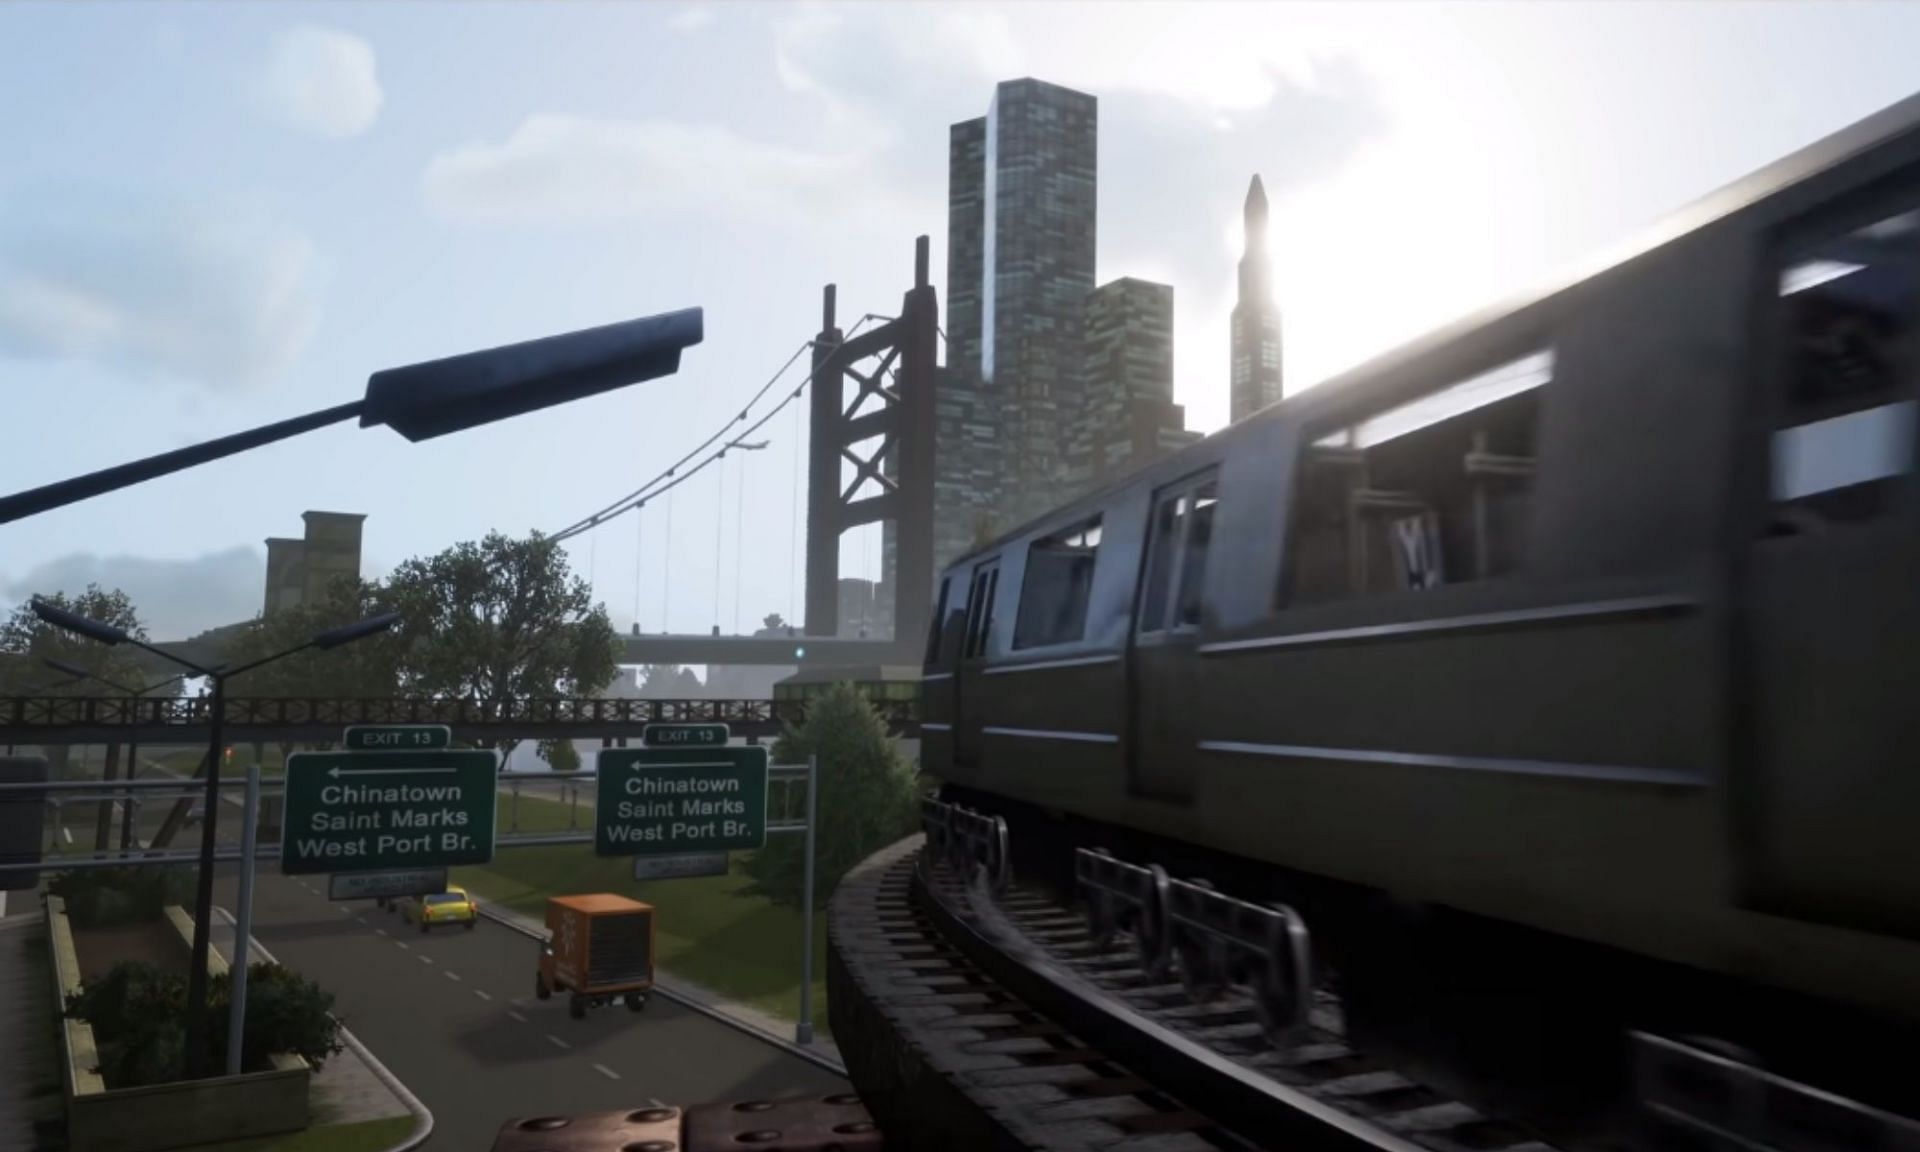 Take a look at the subway (Image via Rockstar Games)